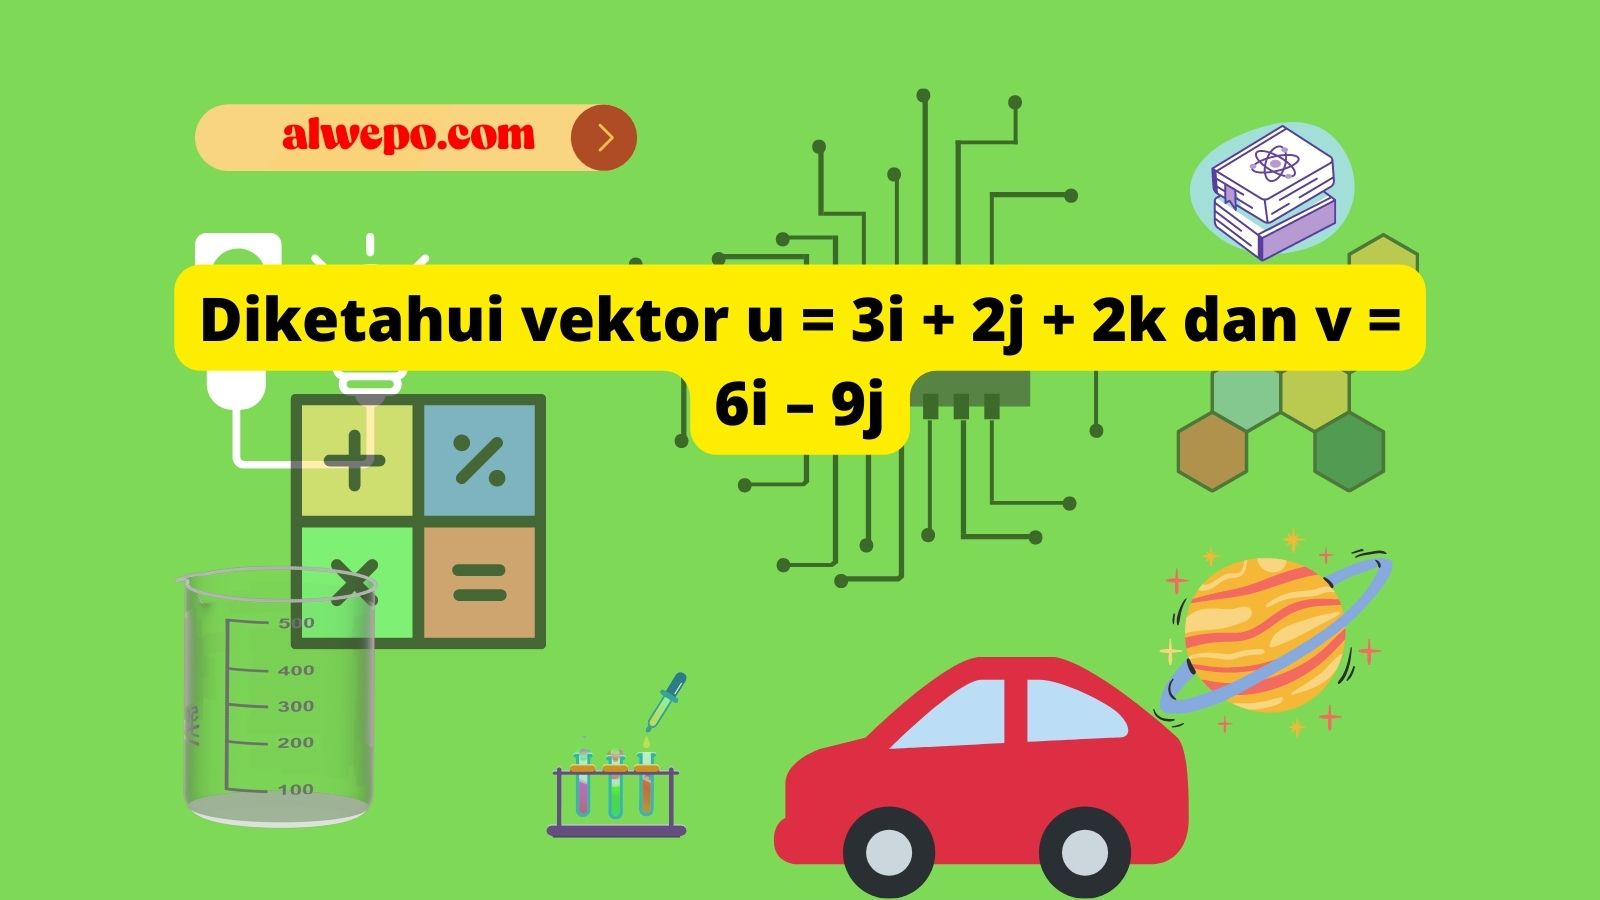 Diketahui vektor u = 3i + 2j + 2k dan v = 6i – 9j